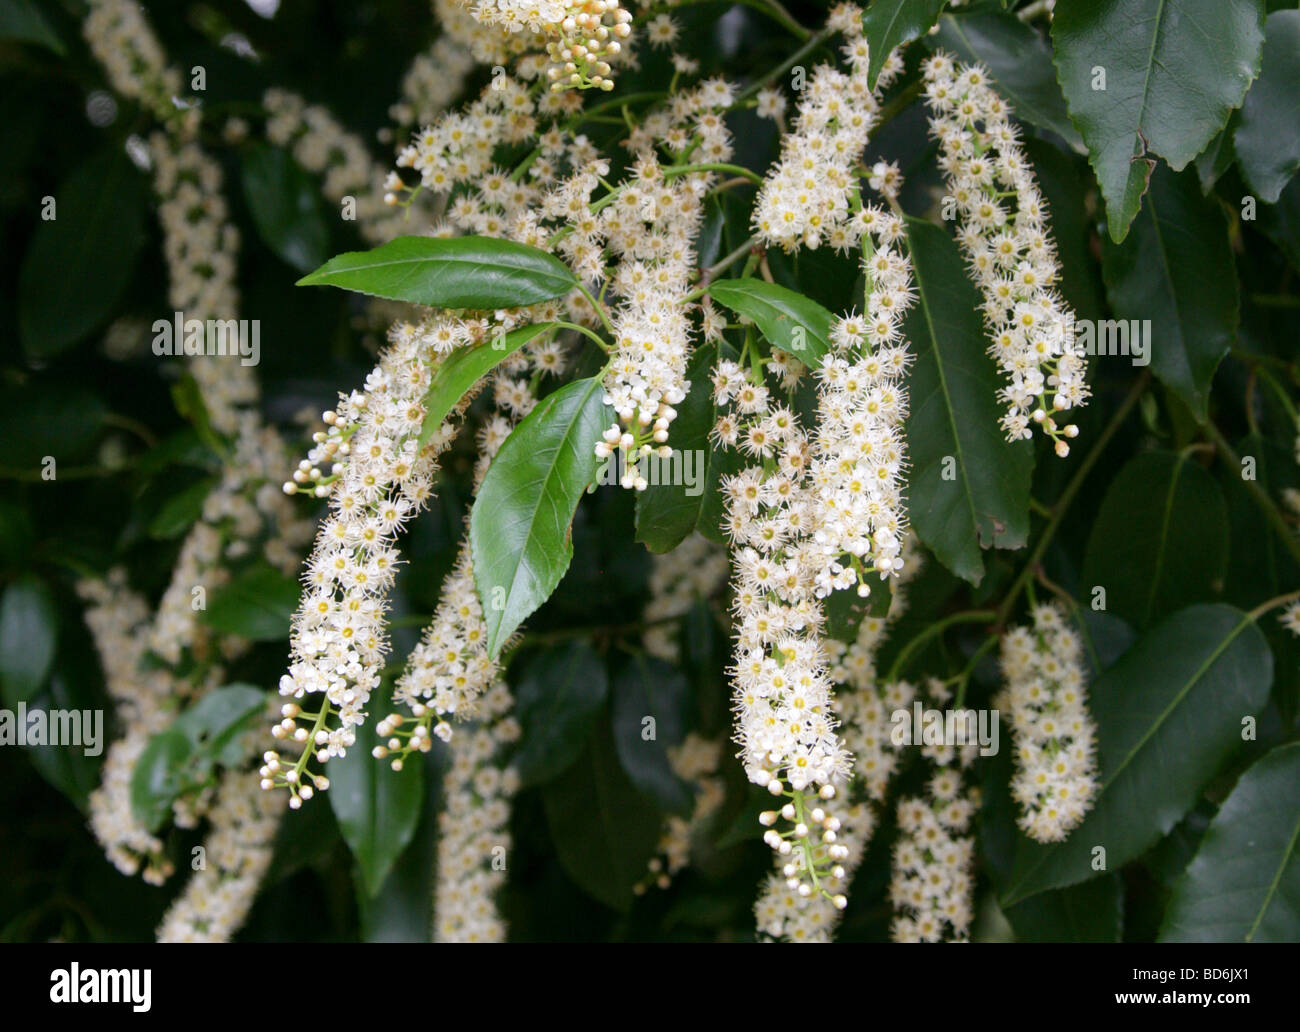 Portugal Laurel, Prunus lusitanica, Rosaceae, Iberian Peninsula, Europe Stock Photo